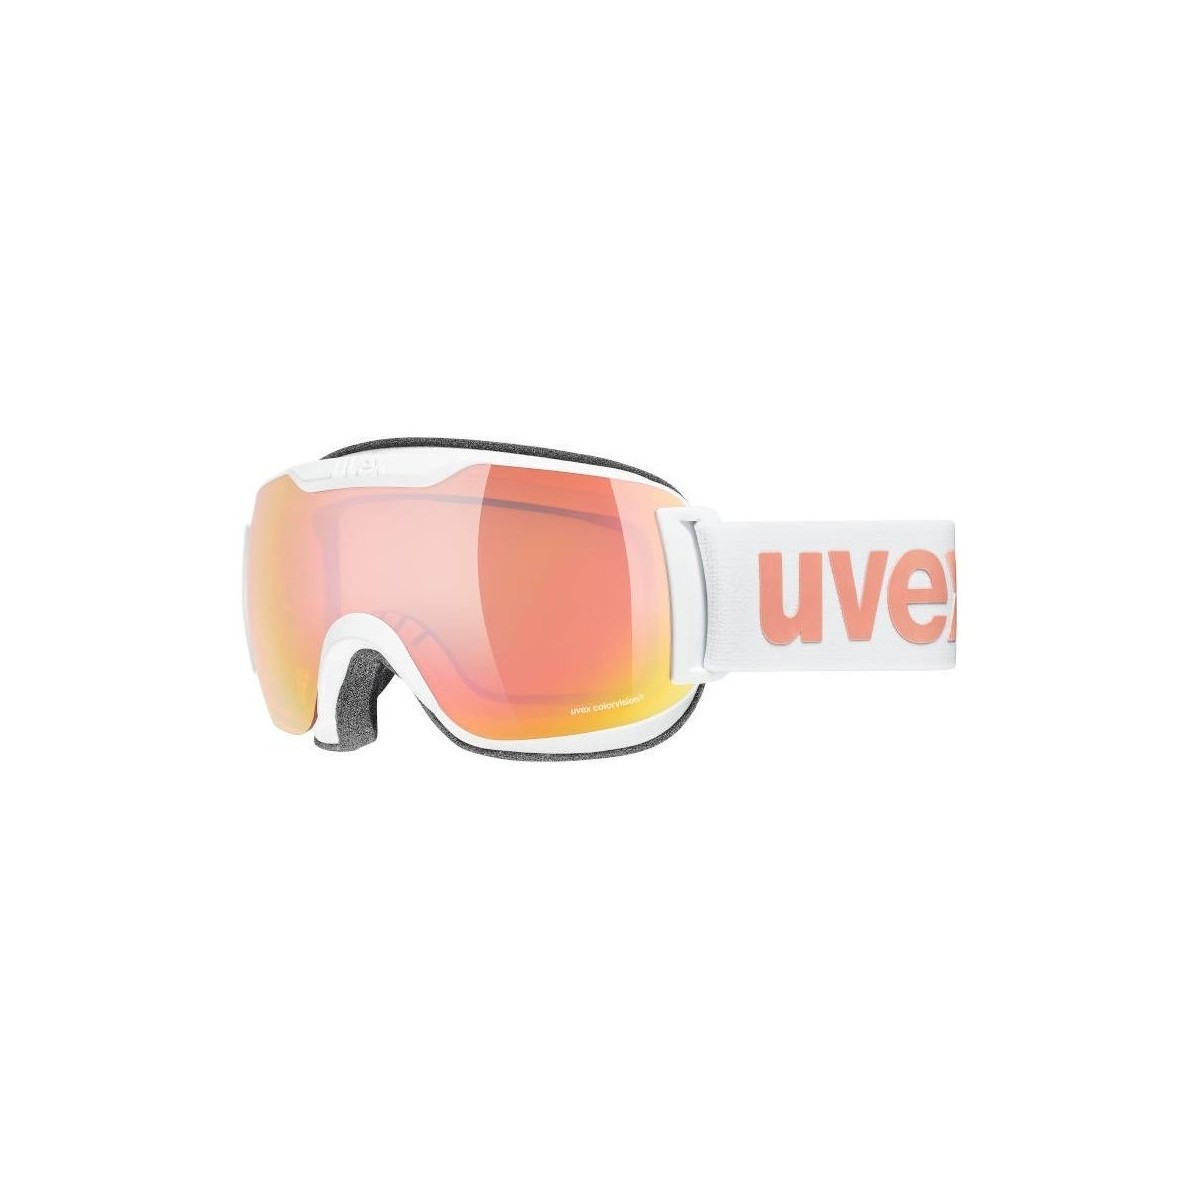 Acessórios Acessórios de desporto Uvex Downhill 2000 S CV 1030 2021 Branco, Cor-de-rosa